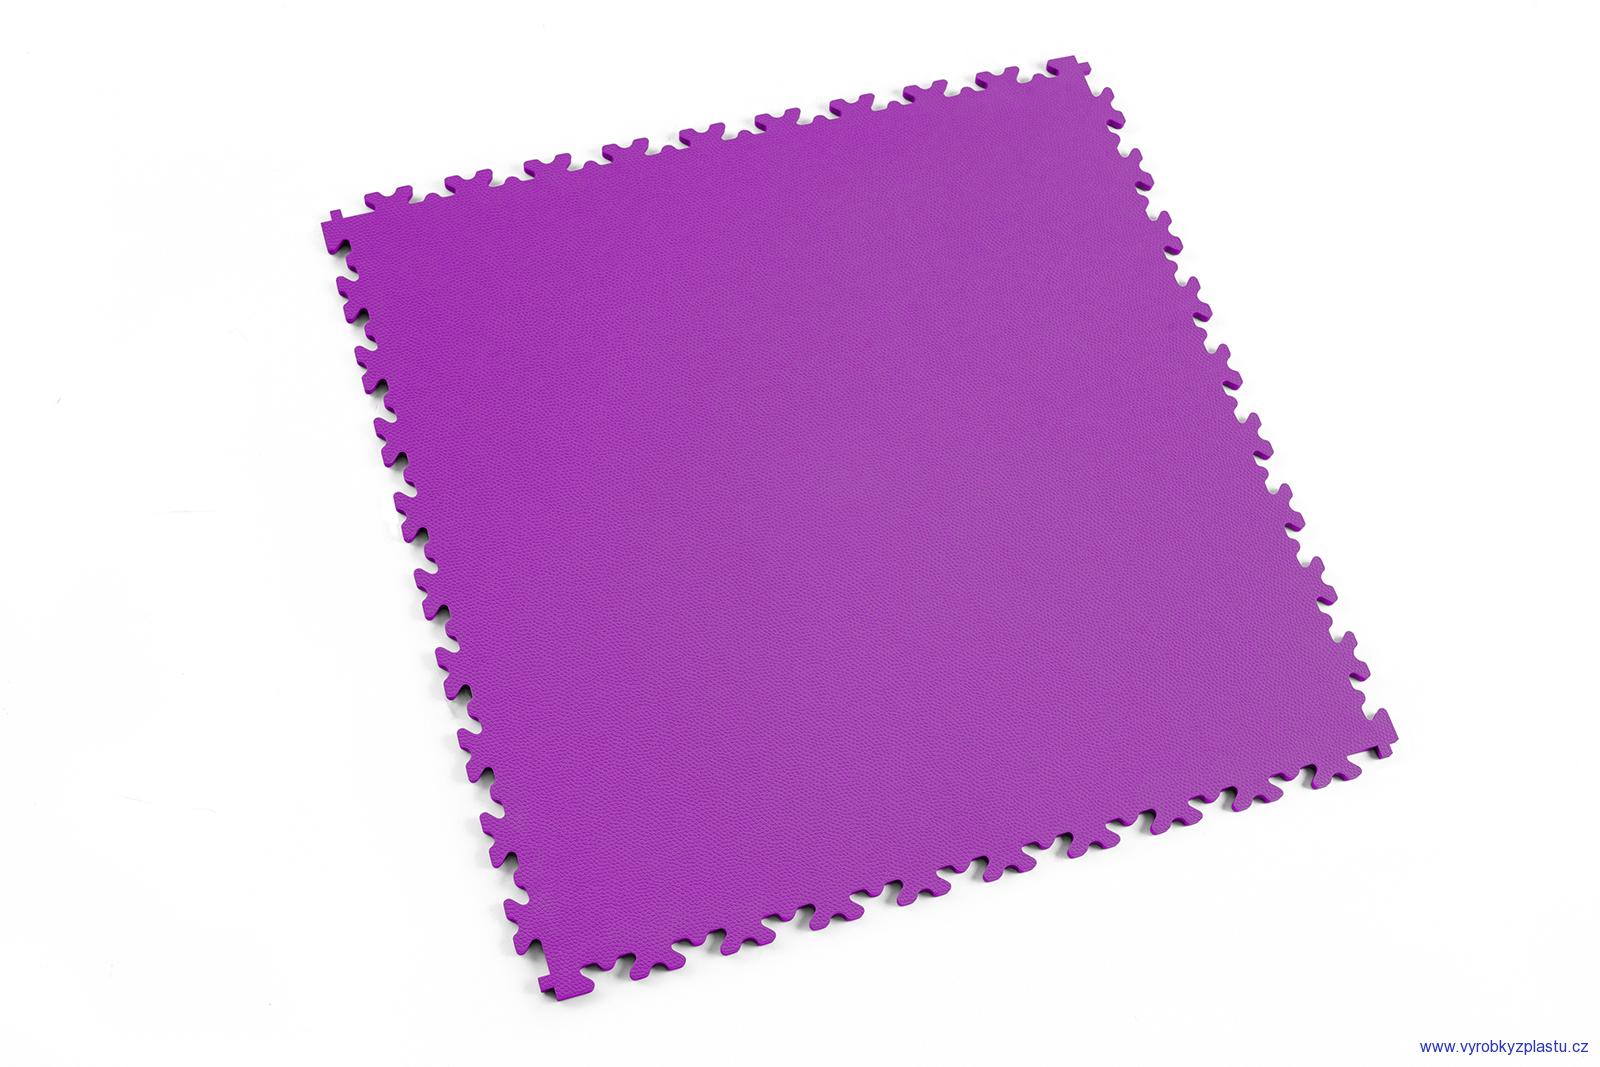 2060 (kůže) - dlaždice pro střední zátěž - Purple